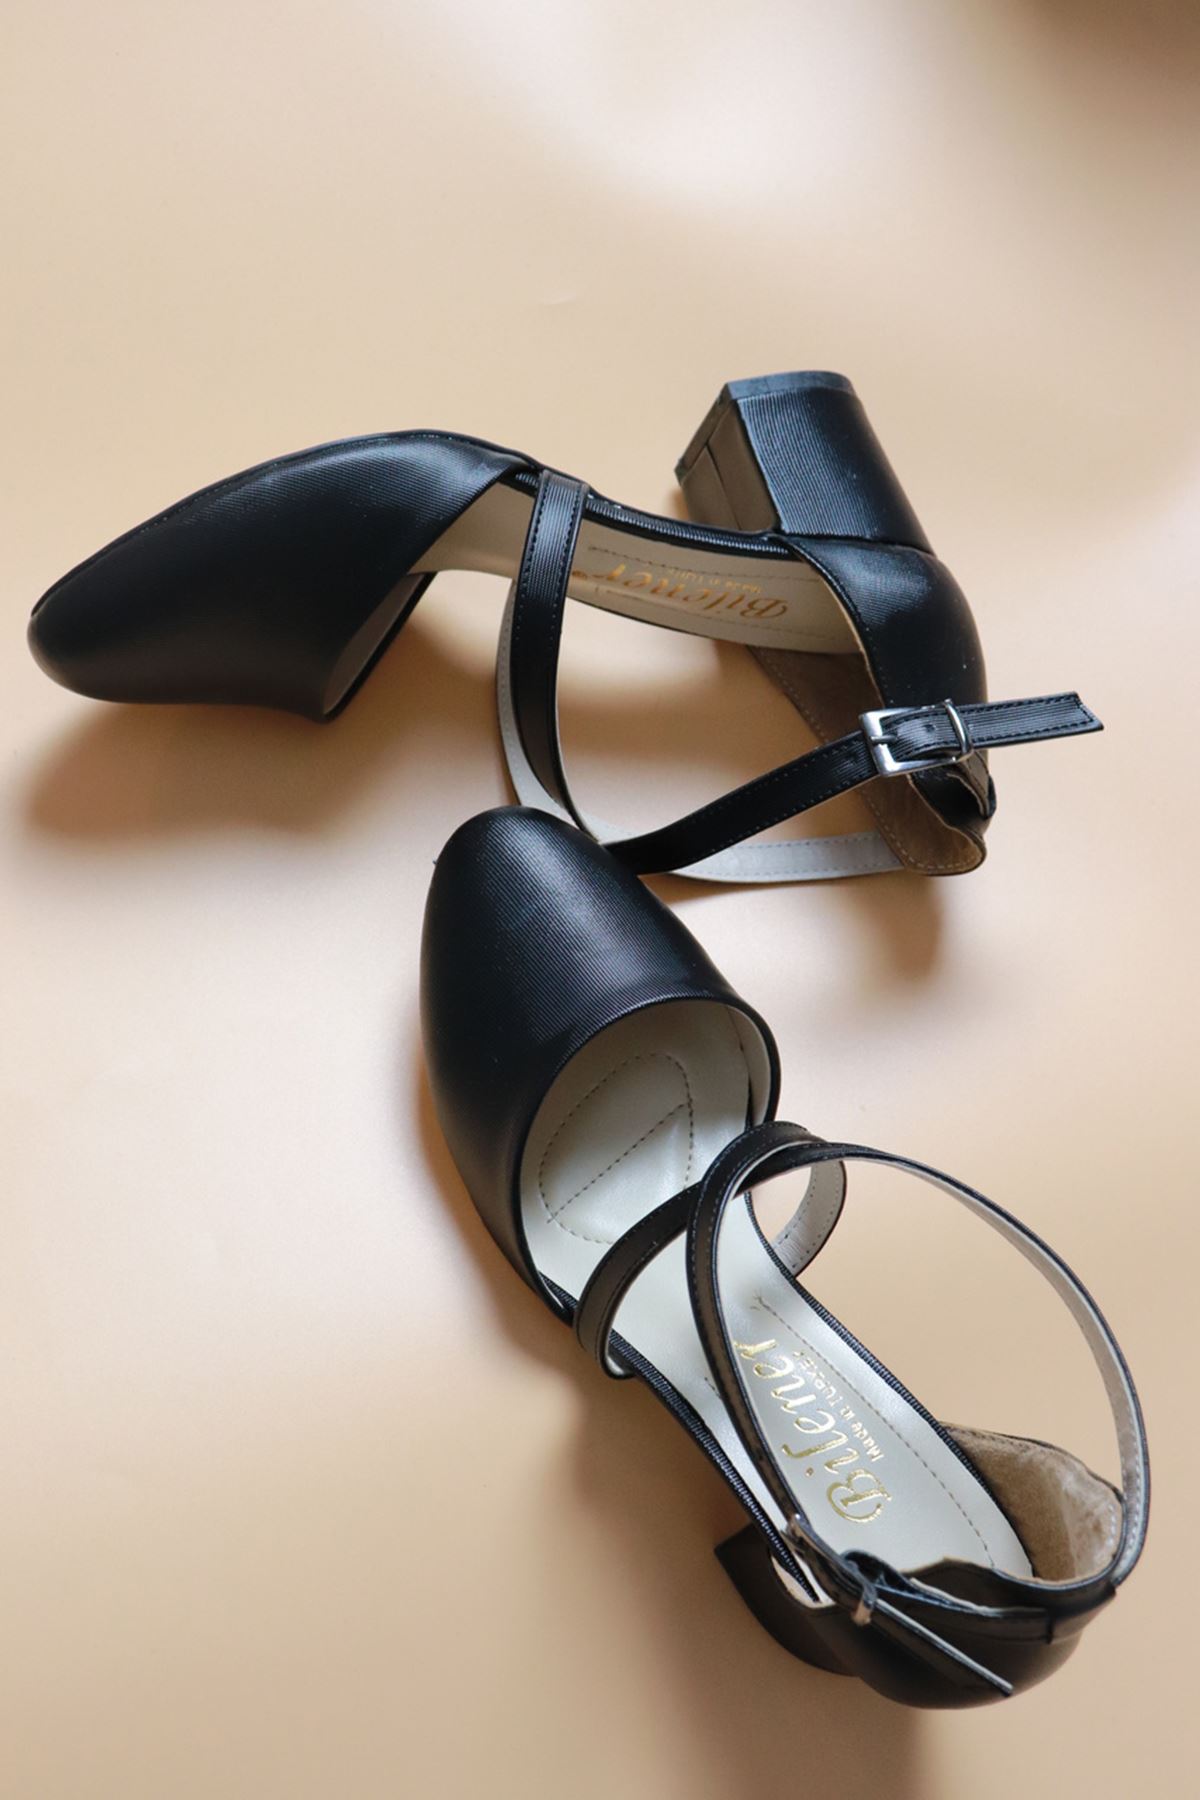 Trendayakkabı - Siyah Prada Tokalı Kadın Ayakkabı